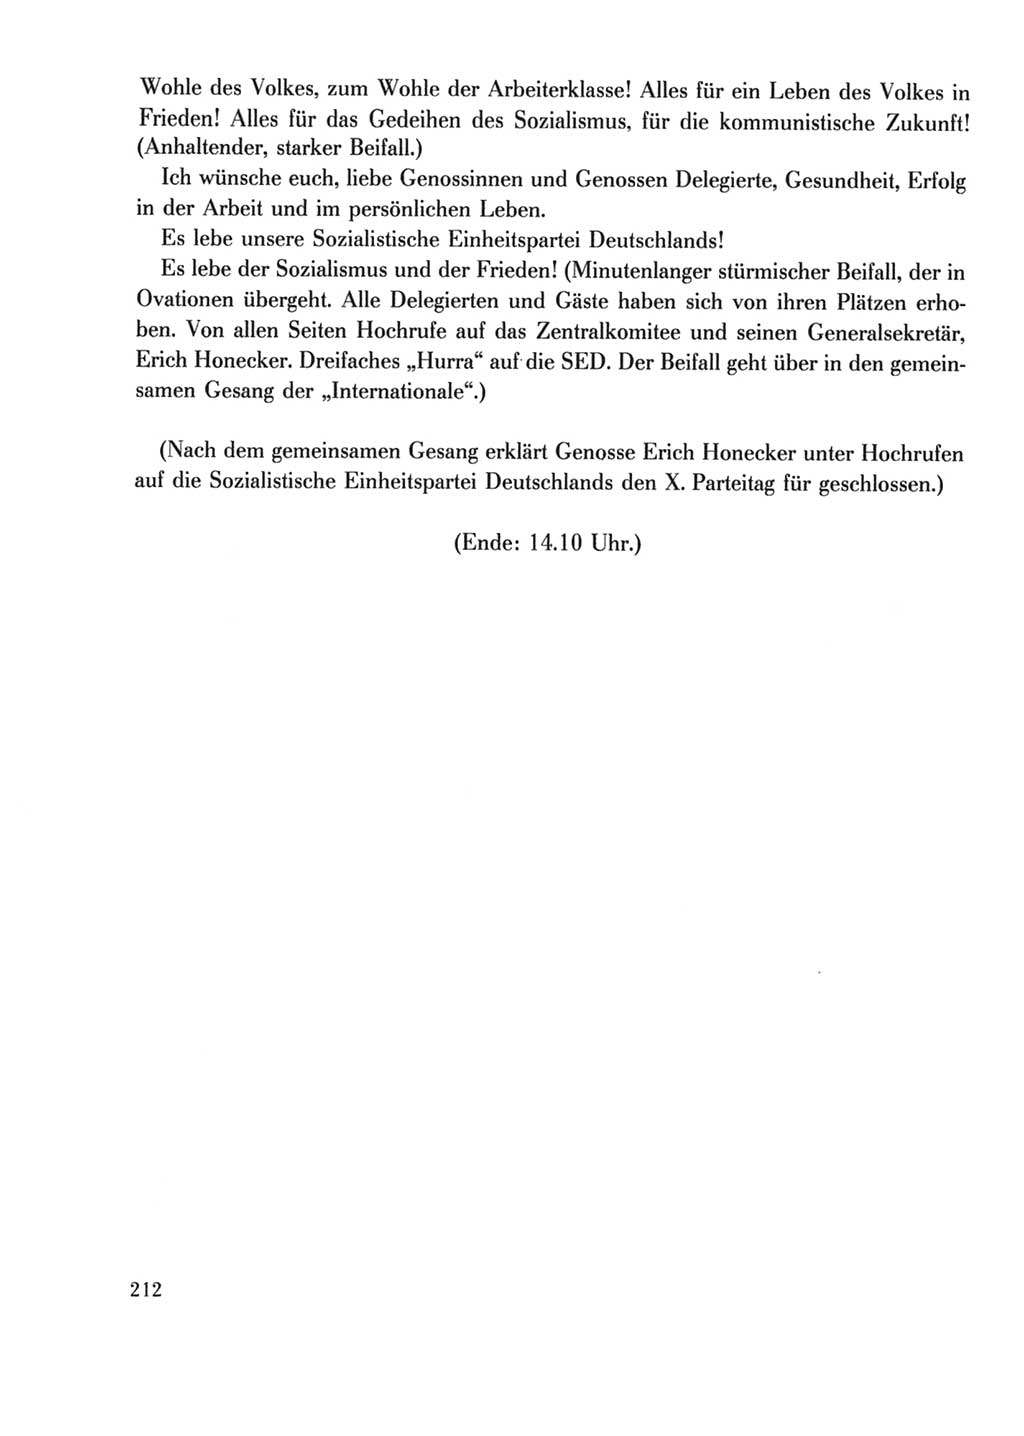 Protokoll der Verhandlungen des Ⅹ. Parteitages der Sozialistischen Einheitspartei Deutschlands (SED) [Deutsche Demokratische Republik (DDR)] 1981, Band 2, Seite 212 (Prot. Verh. Ⅹ. PT SED DDR 1981, Bd. 2, S. 212)